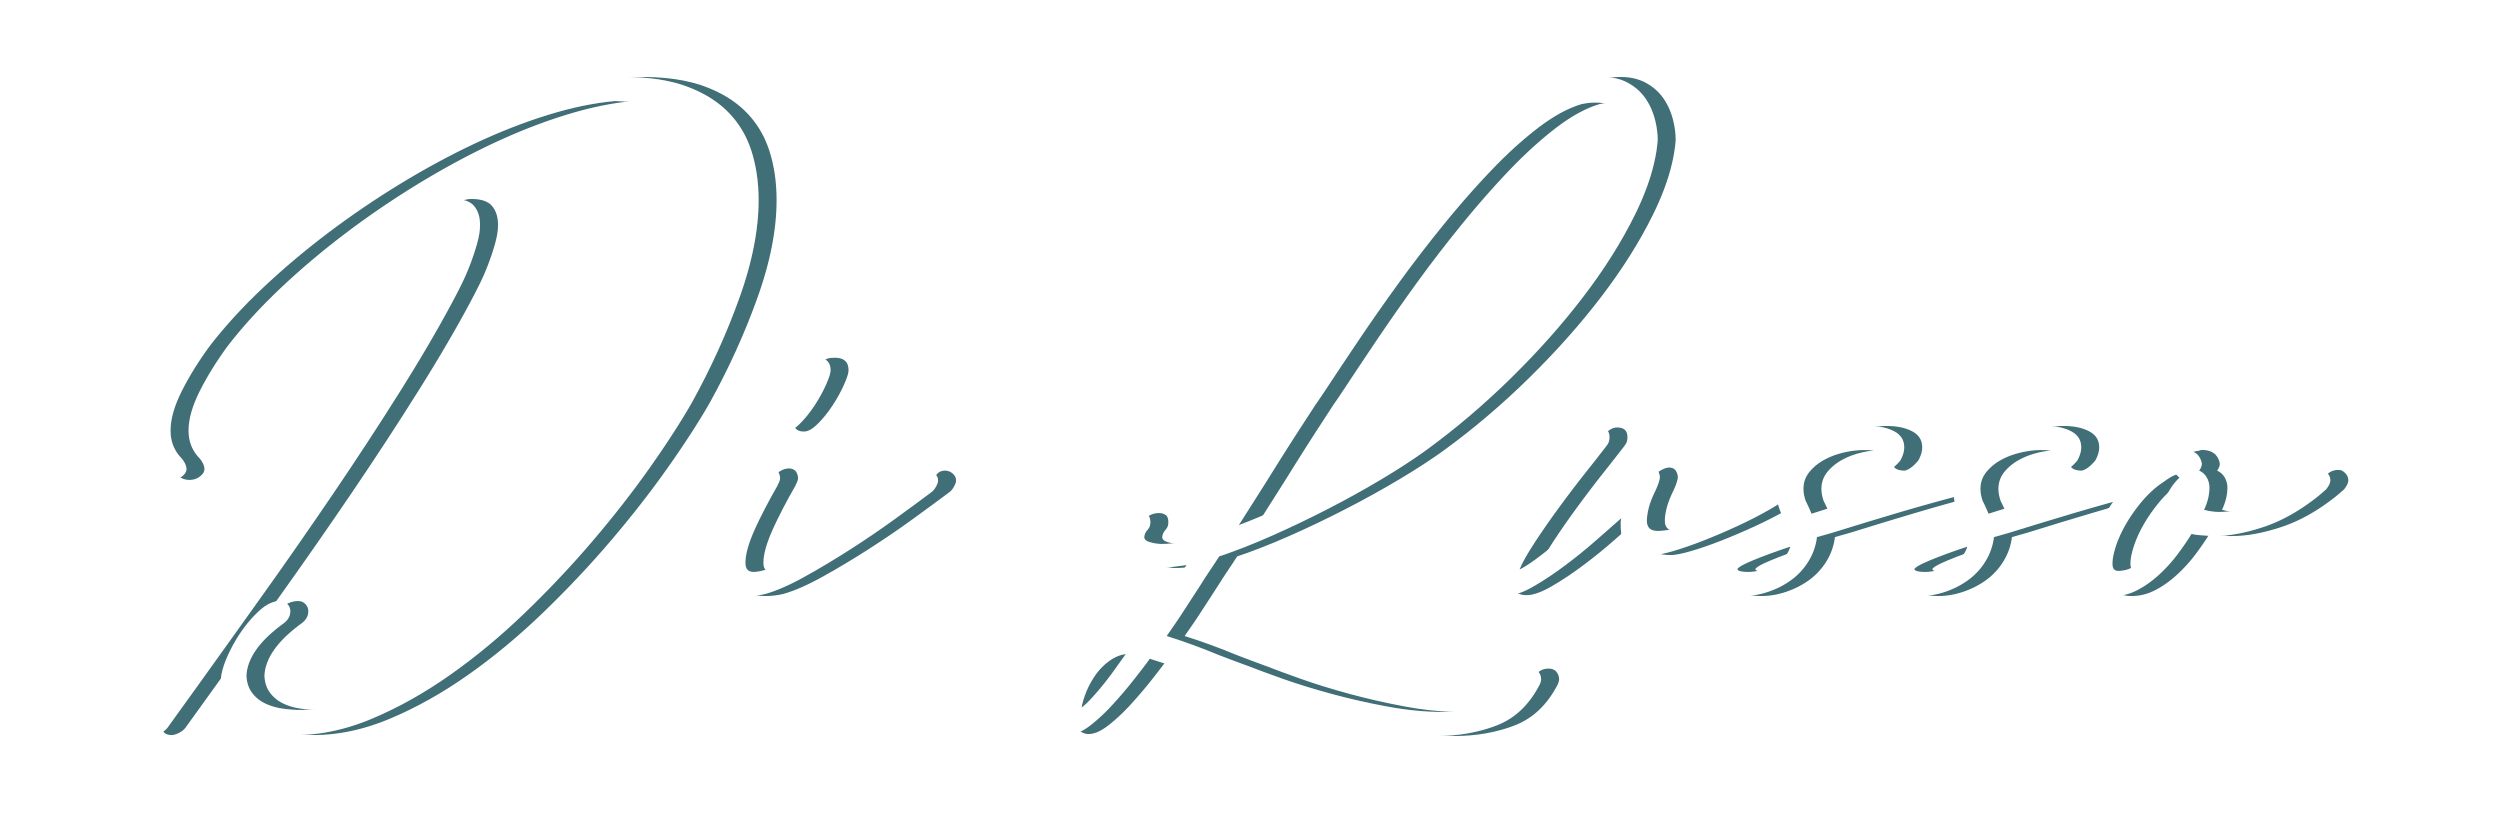 Di-Lusso-logo-barnevogn